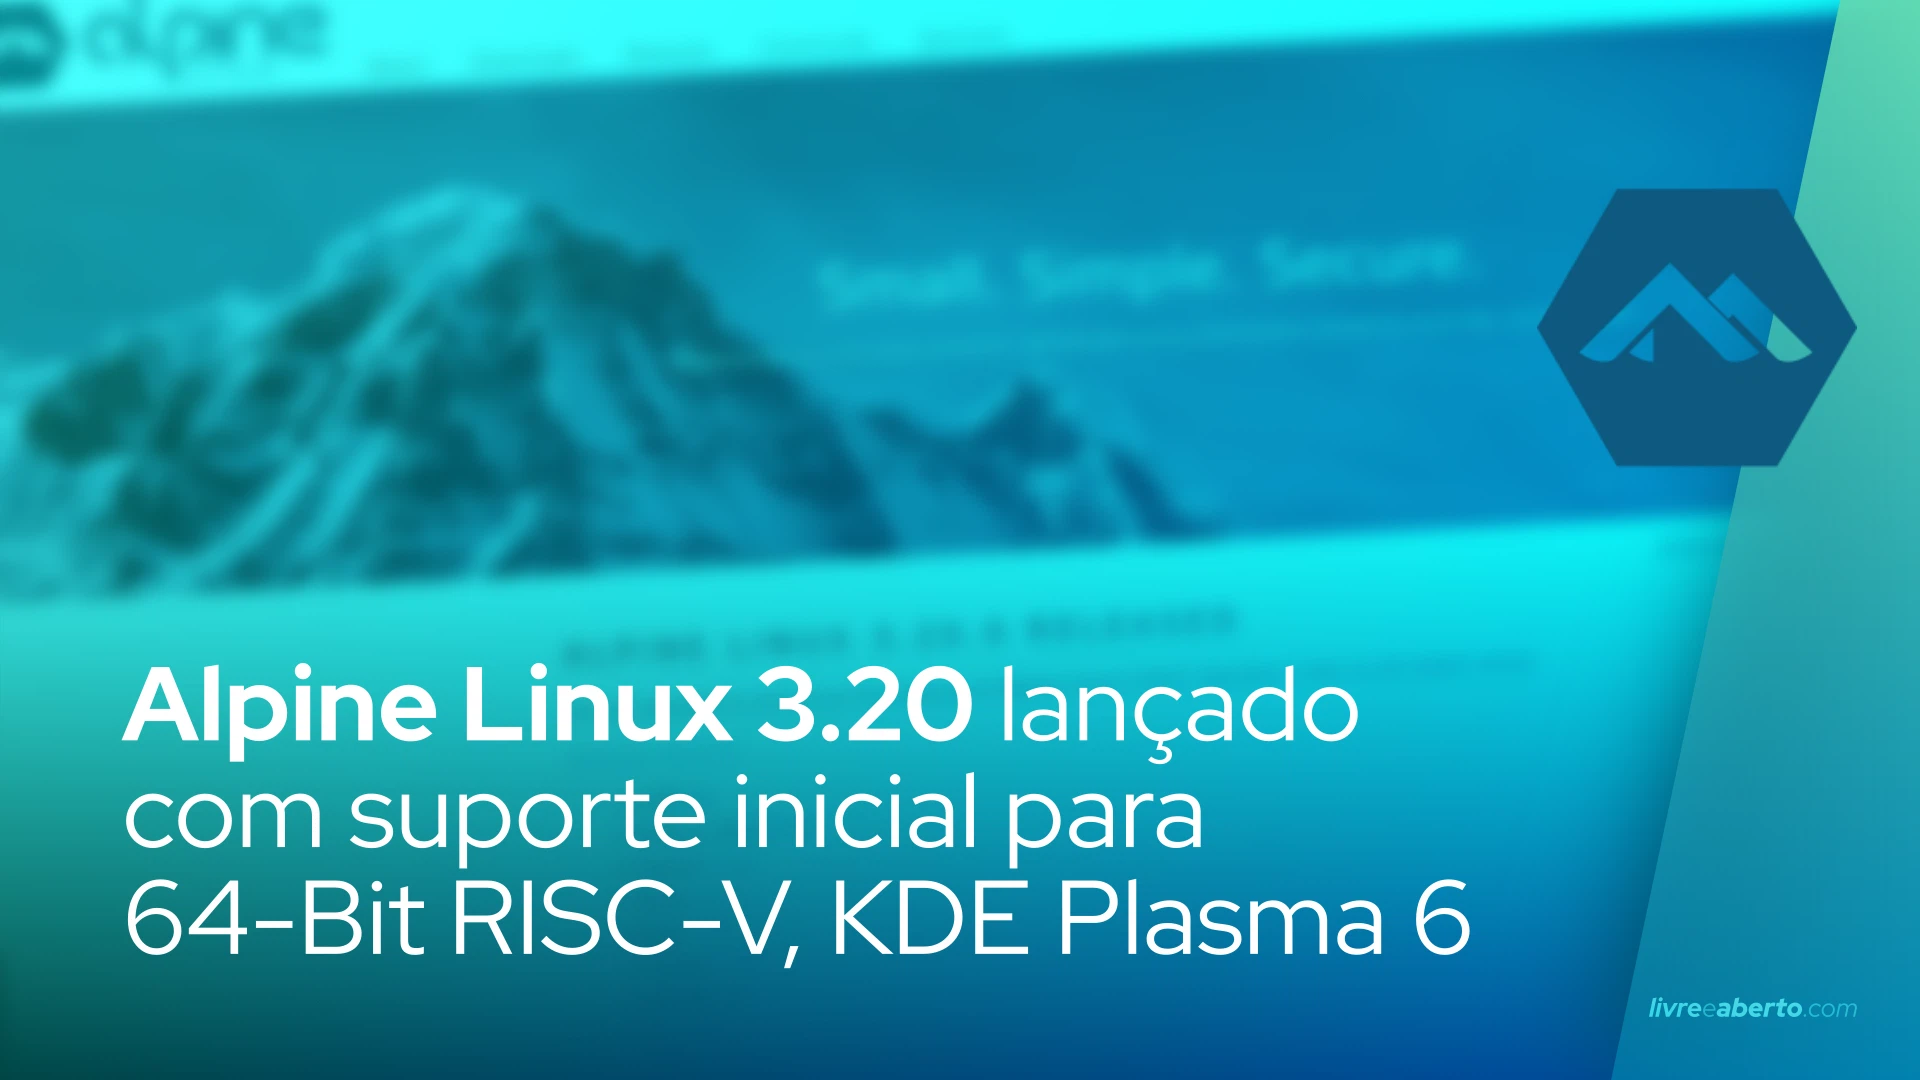 Alpine Linux 3.20 lançado com suporte inicial para 64-Bit RISC-V, KDE Plasma 6